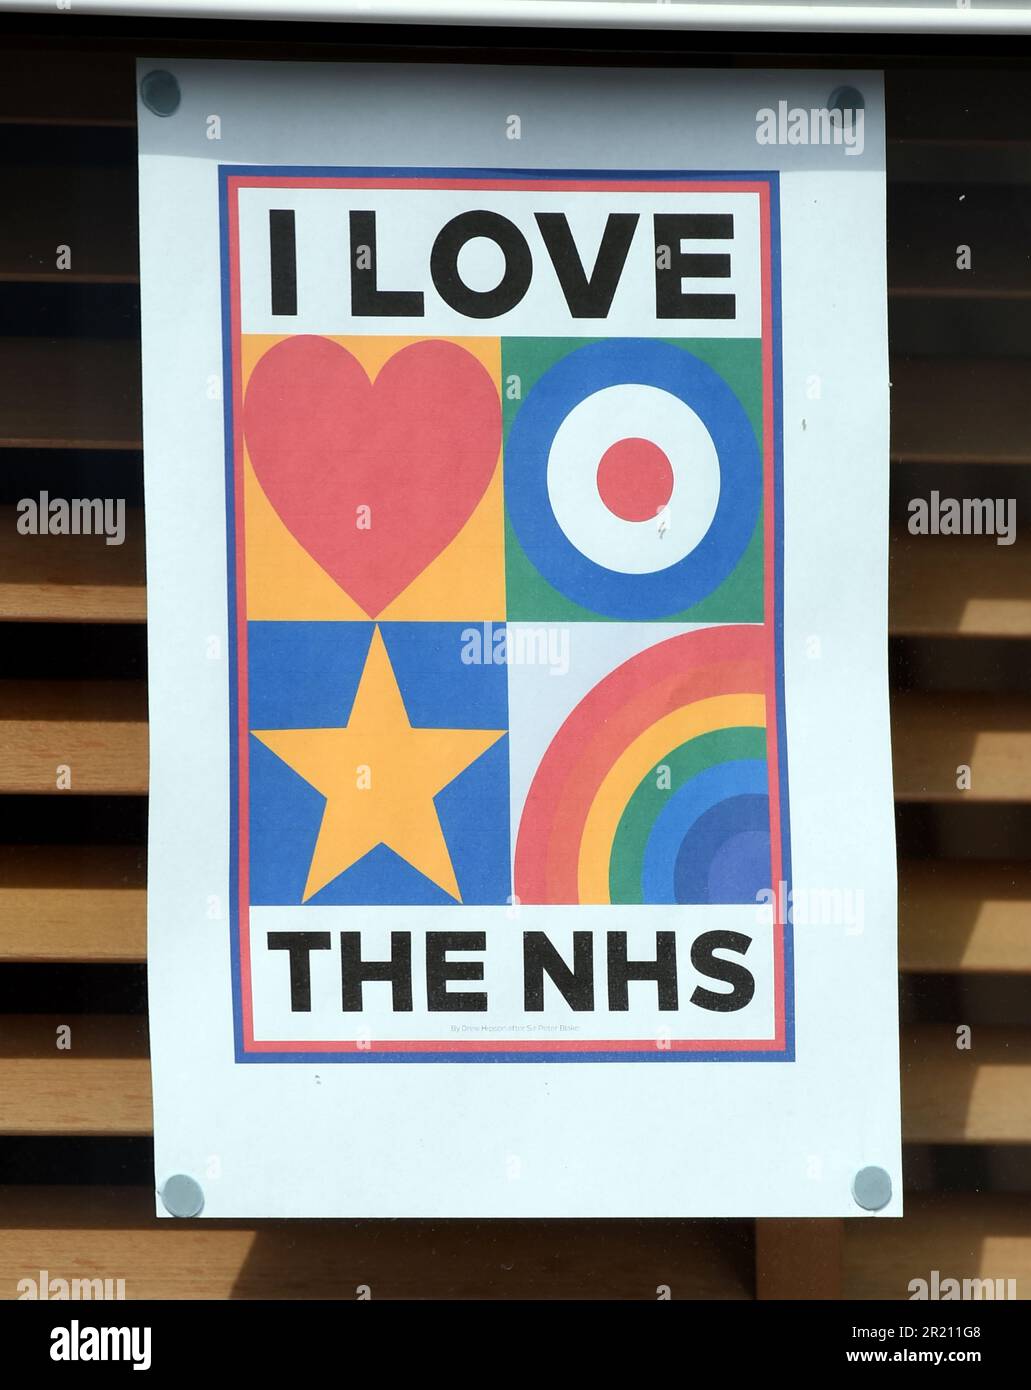 Fotografia di un poster appeso in una finestra che mostra il supporto per l'NHS durante il Covid-19. Questi sono stati appesi durante il blocco globale come un segno di speranza e sostegno. Foto Stock